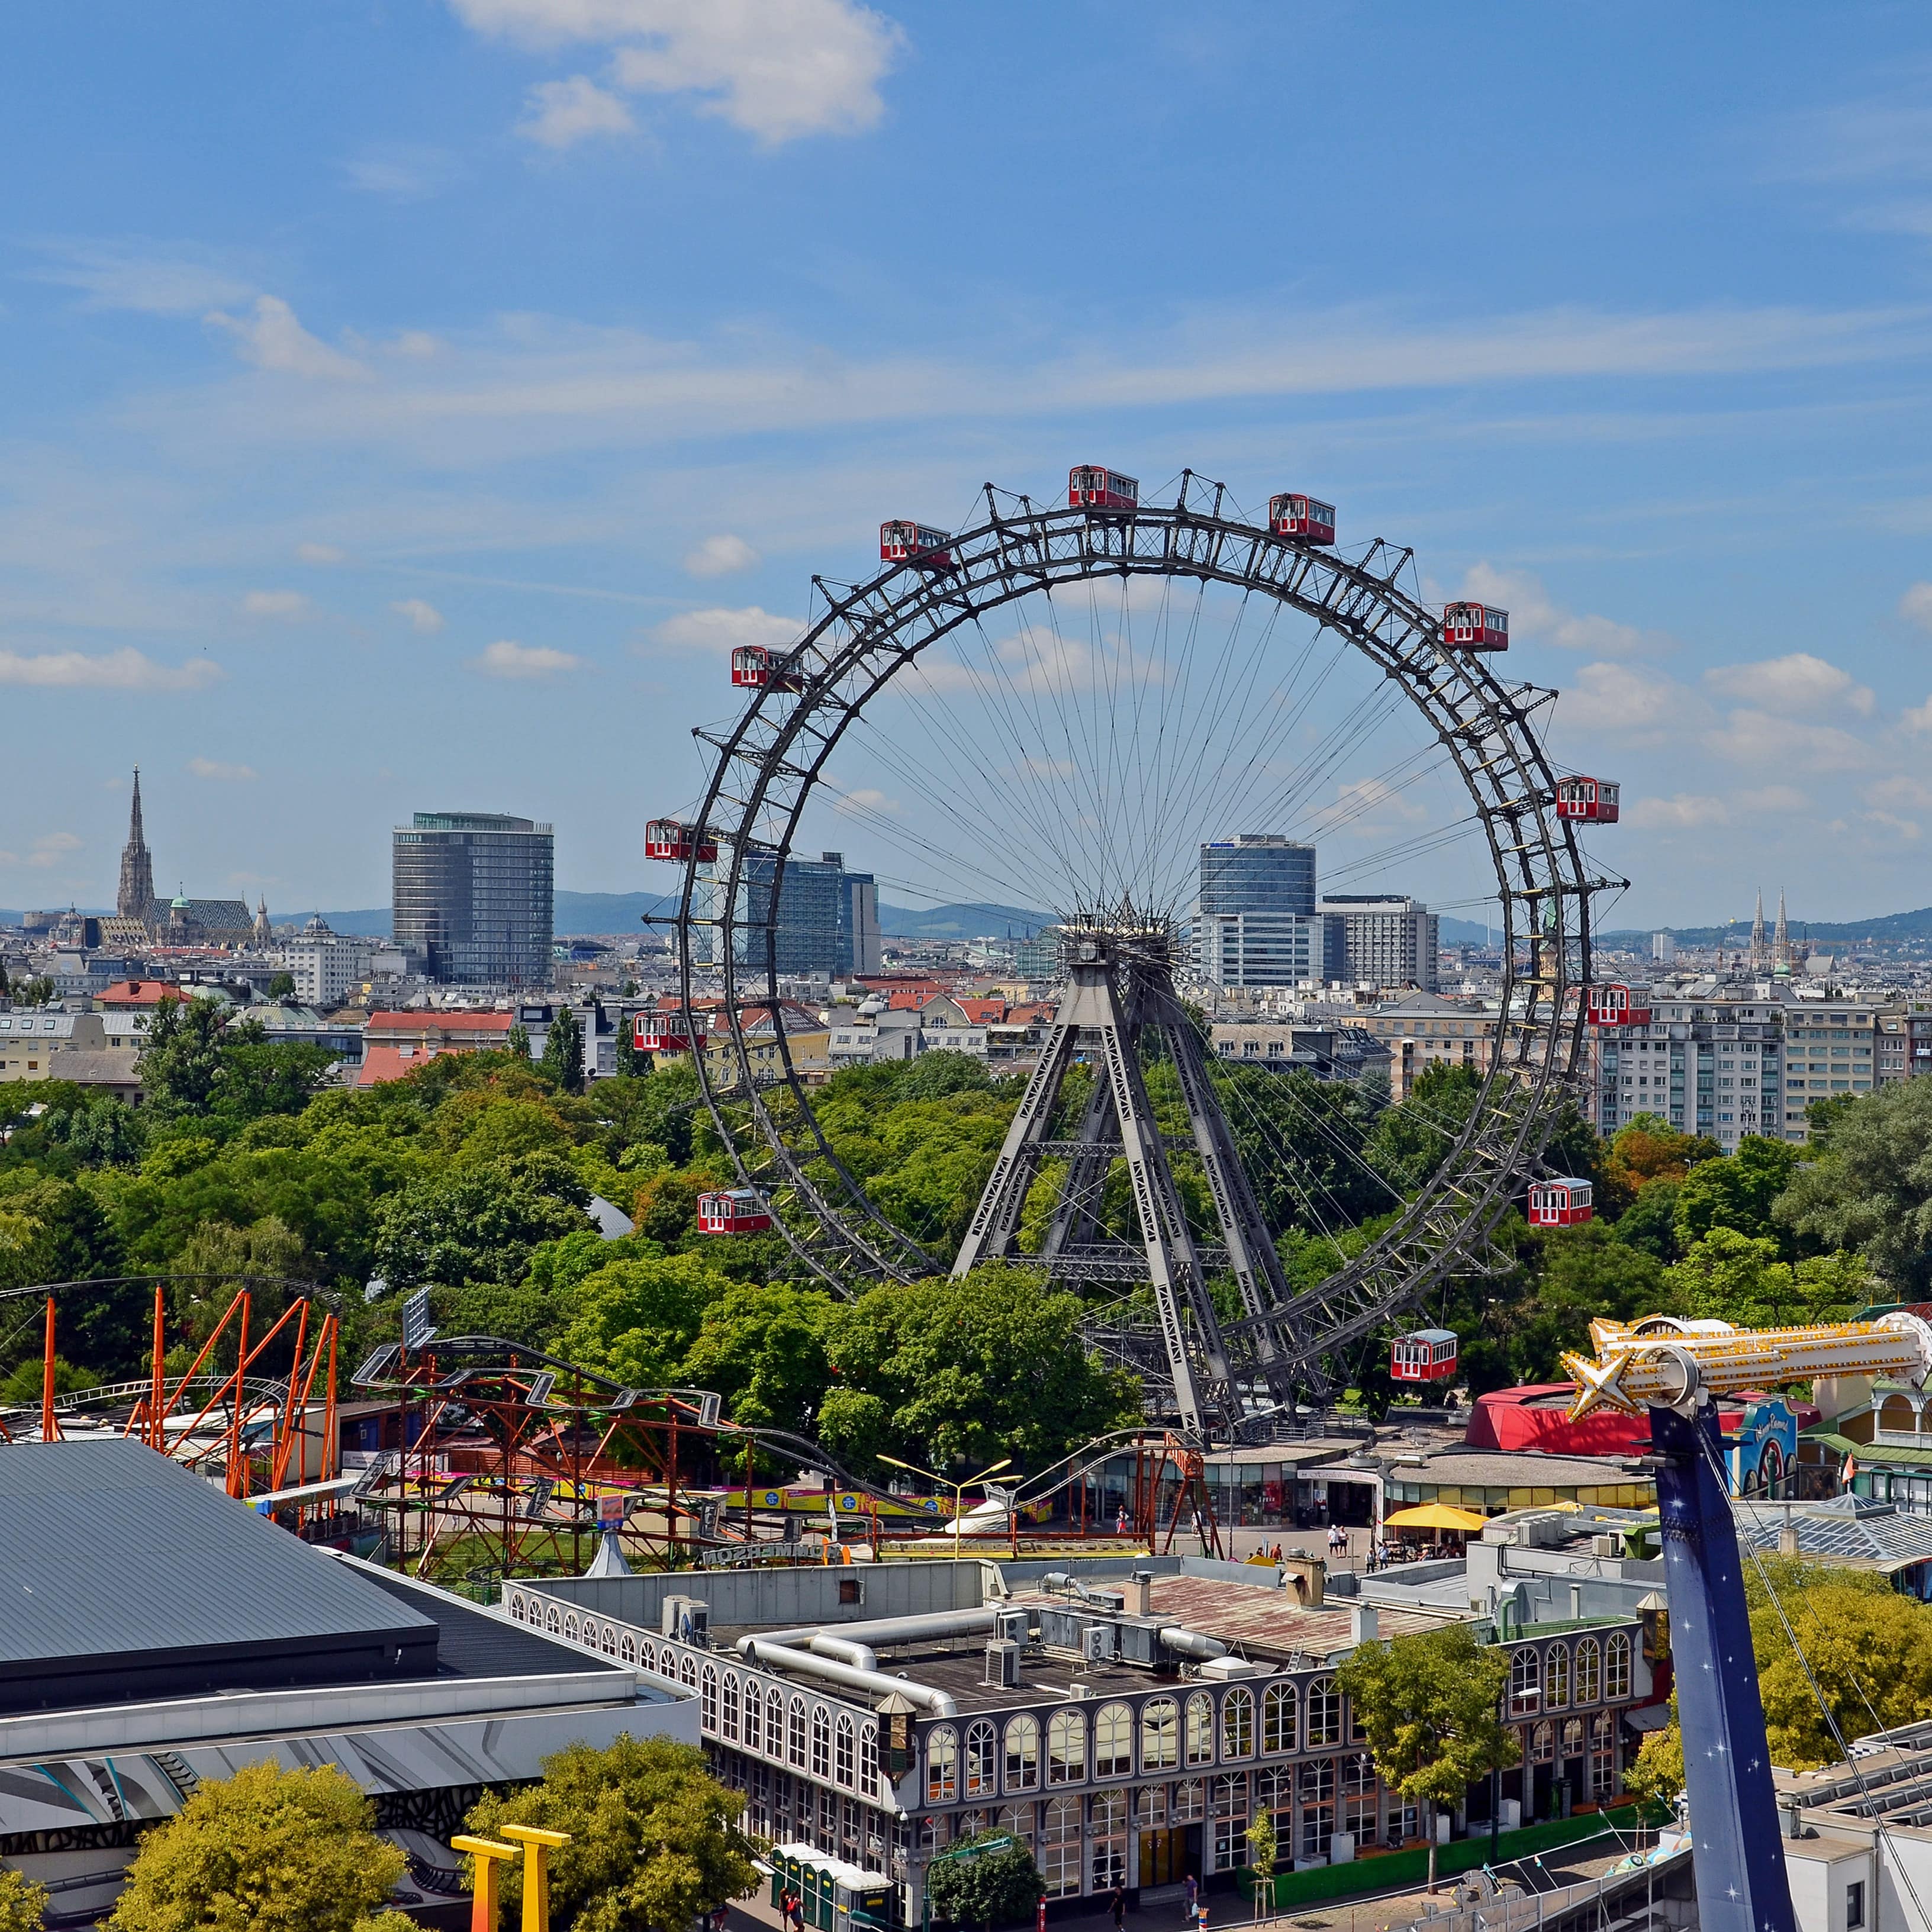 Blick auf Wien mit dem Riesenrad des Wiener Prater